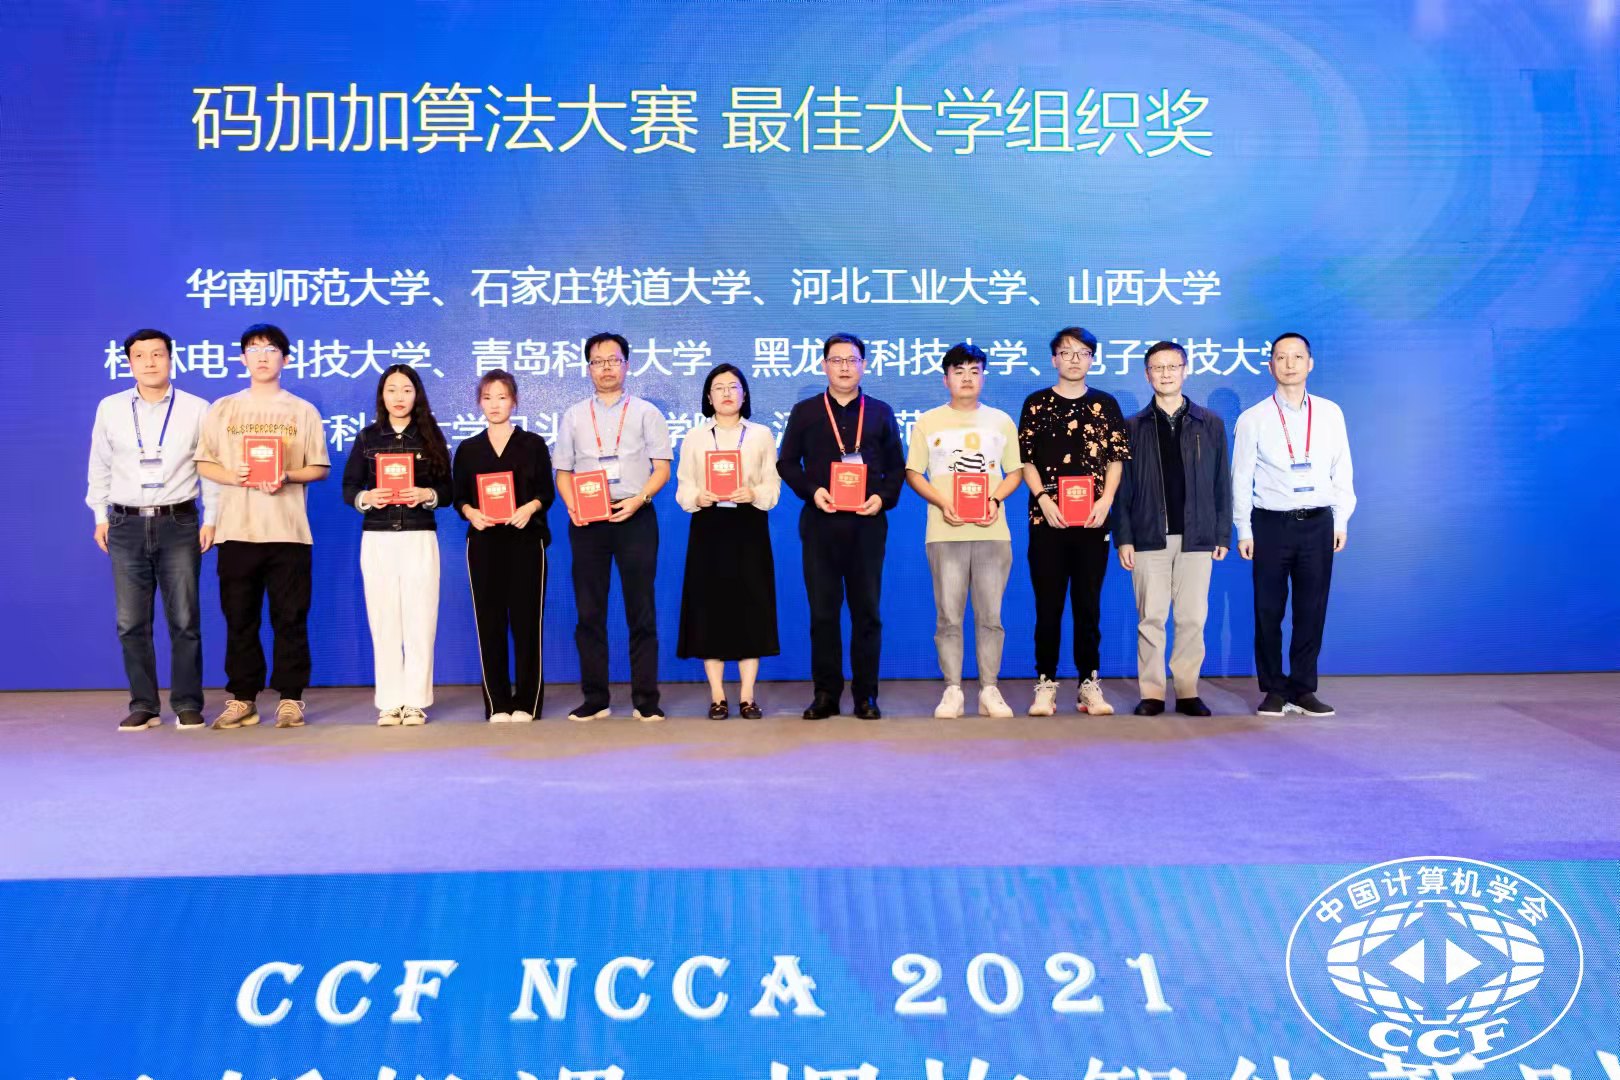 软件学院参加中国计算机应用大赛荣获大奖20211019.jpg